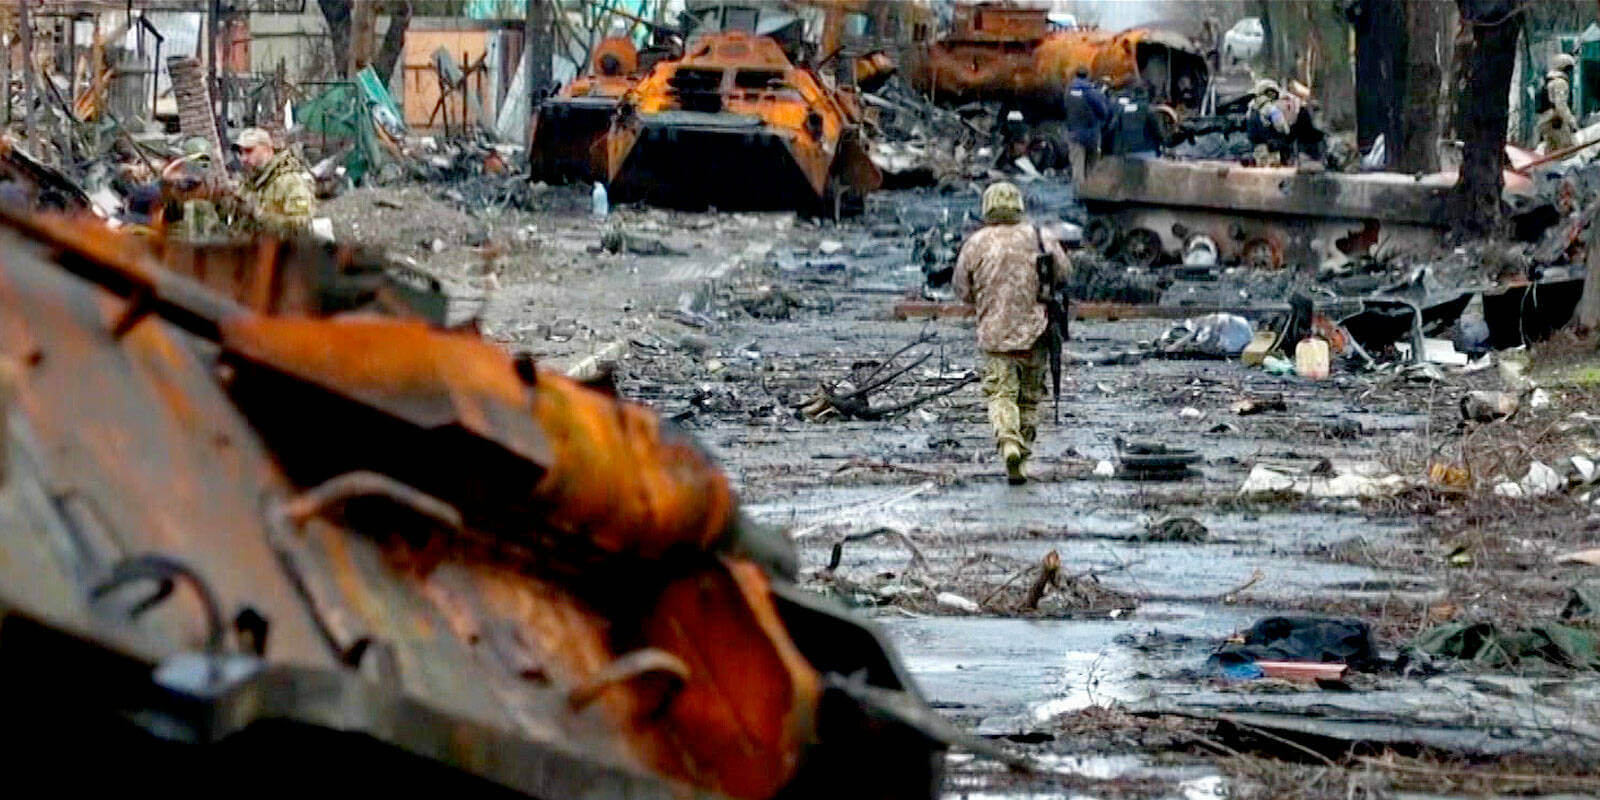 A soldier walks through destruction in Ukraine.